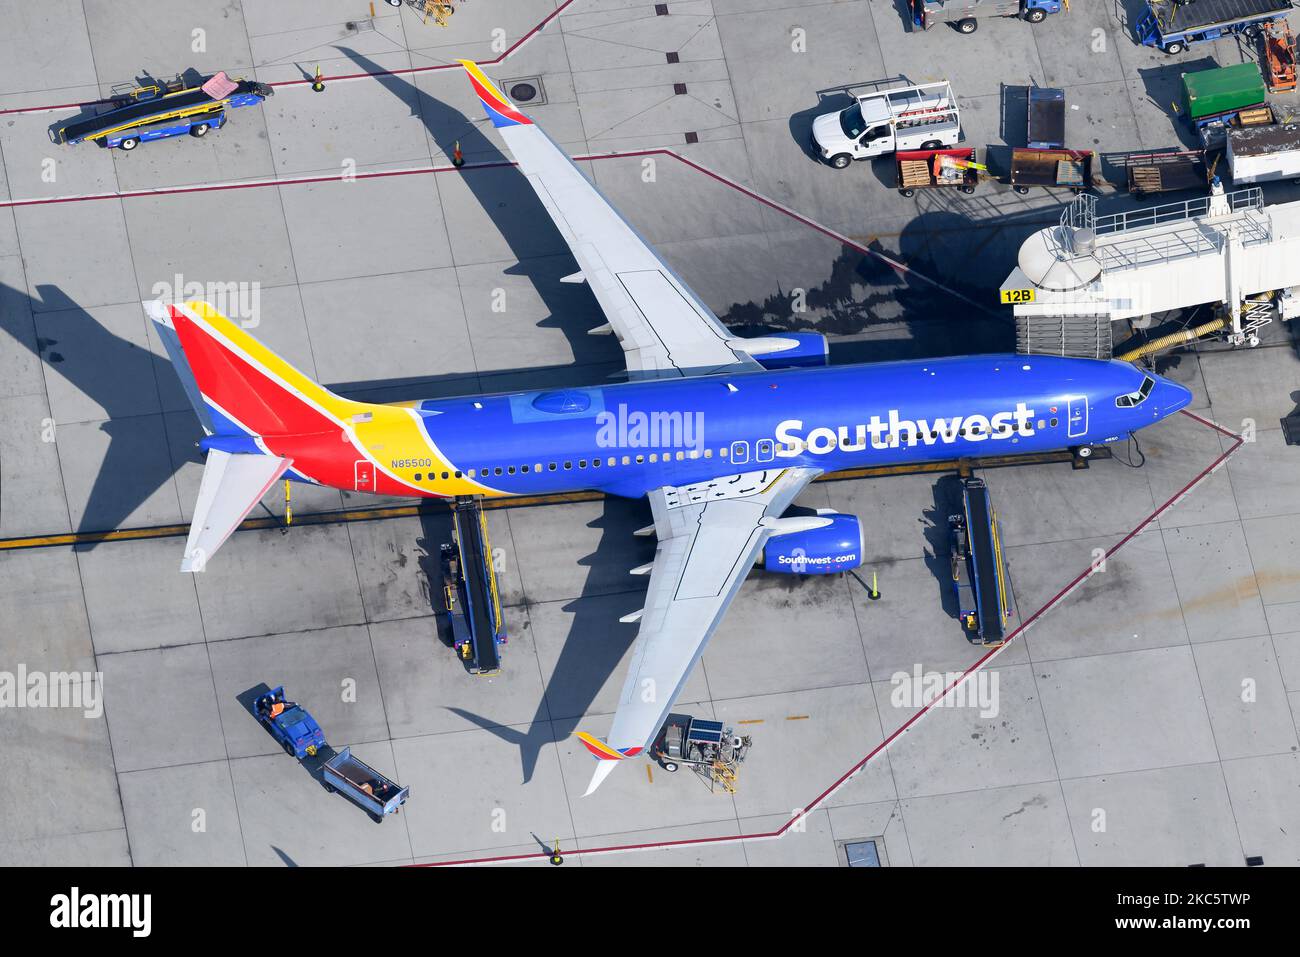 Southwest Airlines Boeing 737-800-Flugzeuge parkten am Flugsteig. Flugzeug 737 mit Flügelspannern. Flugzeug registriert als N8550Q. Stockfoto